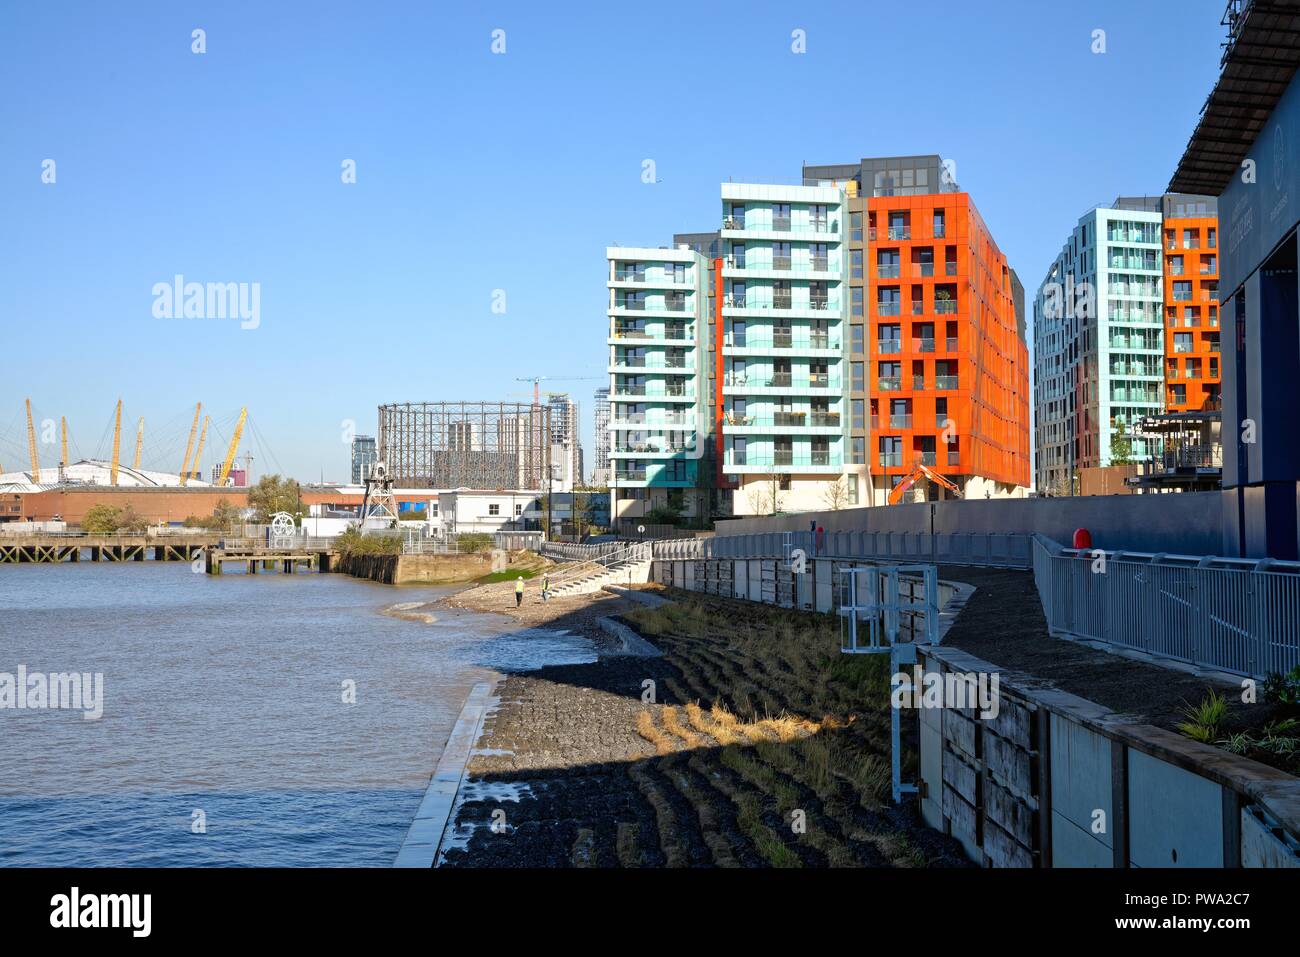 Il fiume giardini nuovi appartamenti dal fiume Tamigi a Greenwich Londra Inghilterra REGNO UNITO Foto Stock